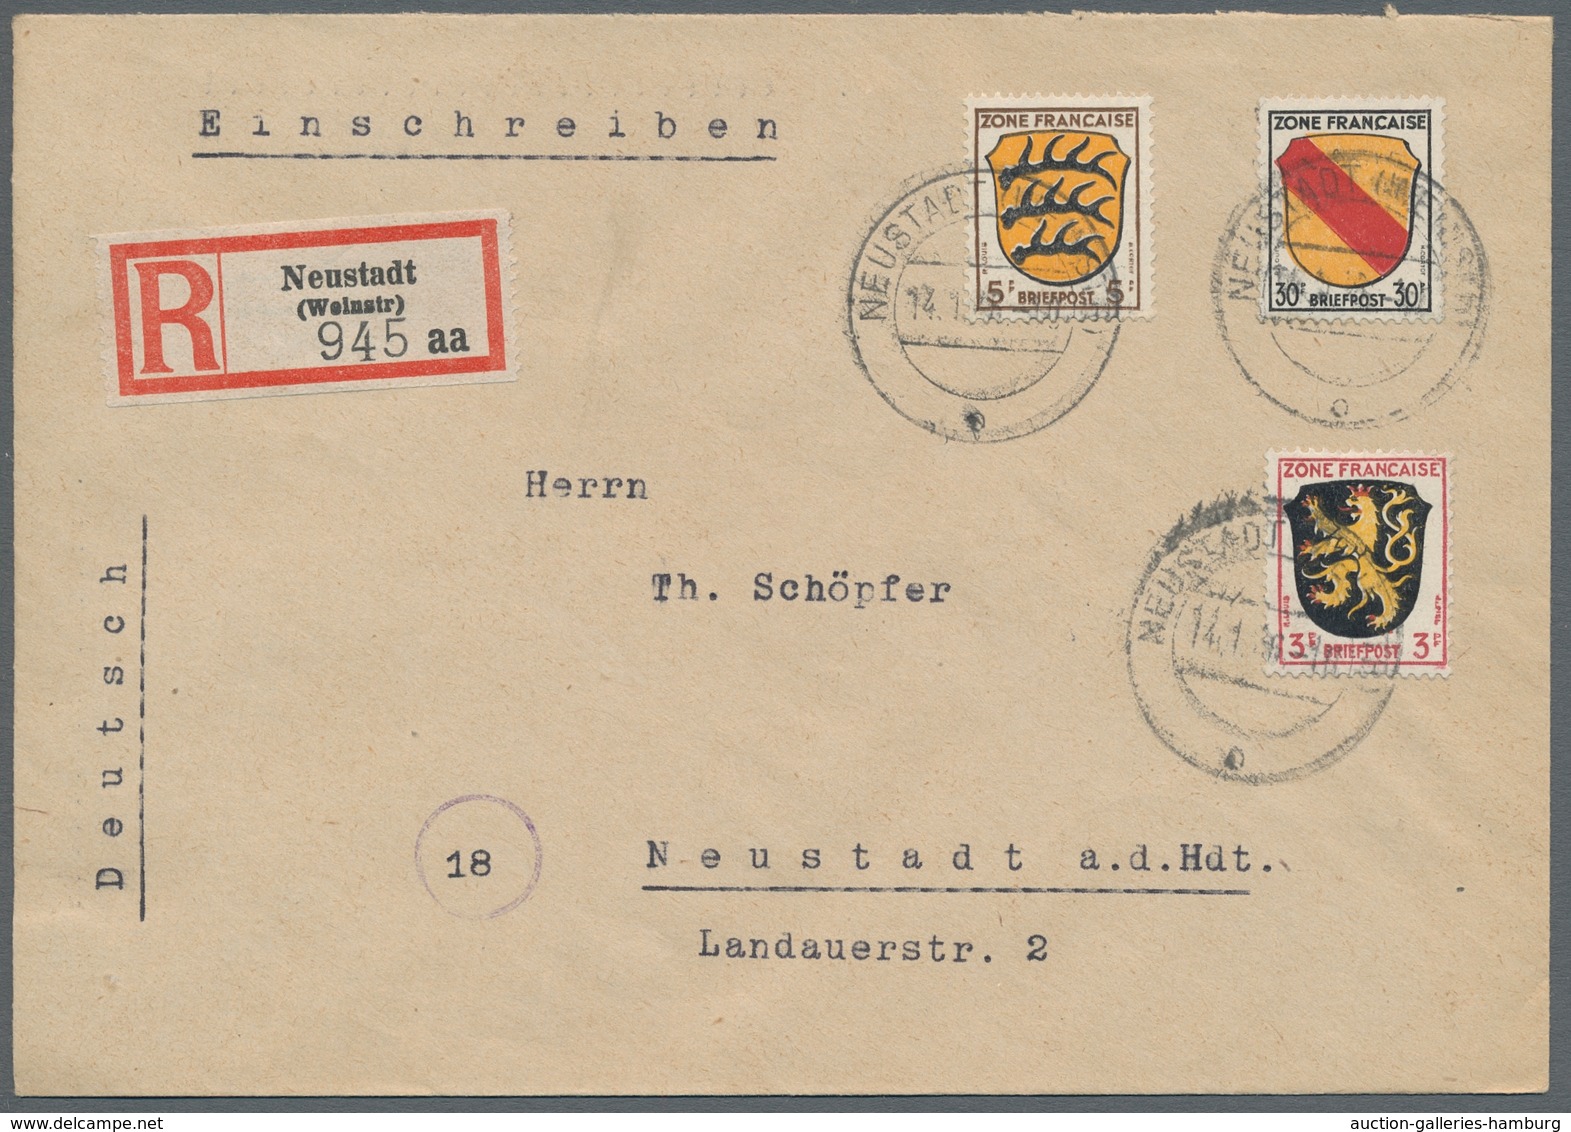 Französische Zone - Allgemeine Ausgabe: 1945, "1 Pfg. bis 5 Mk. Wappen/Dichter", sauber gestempelt a